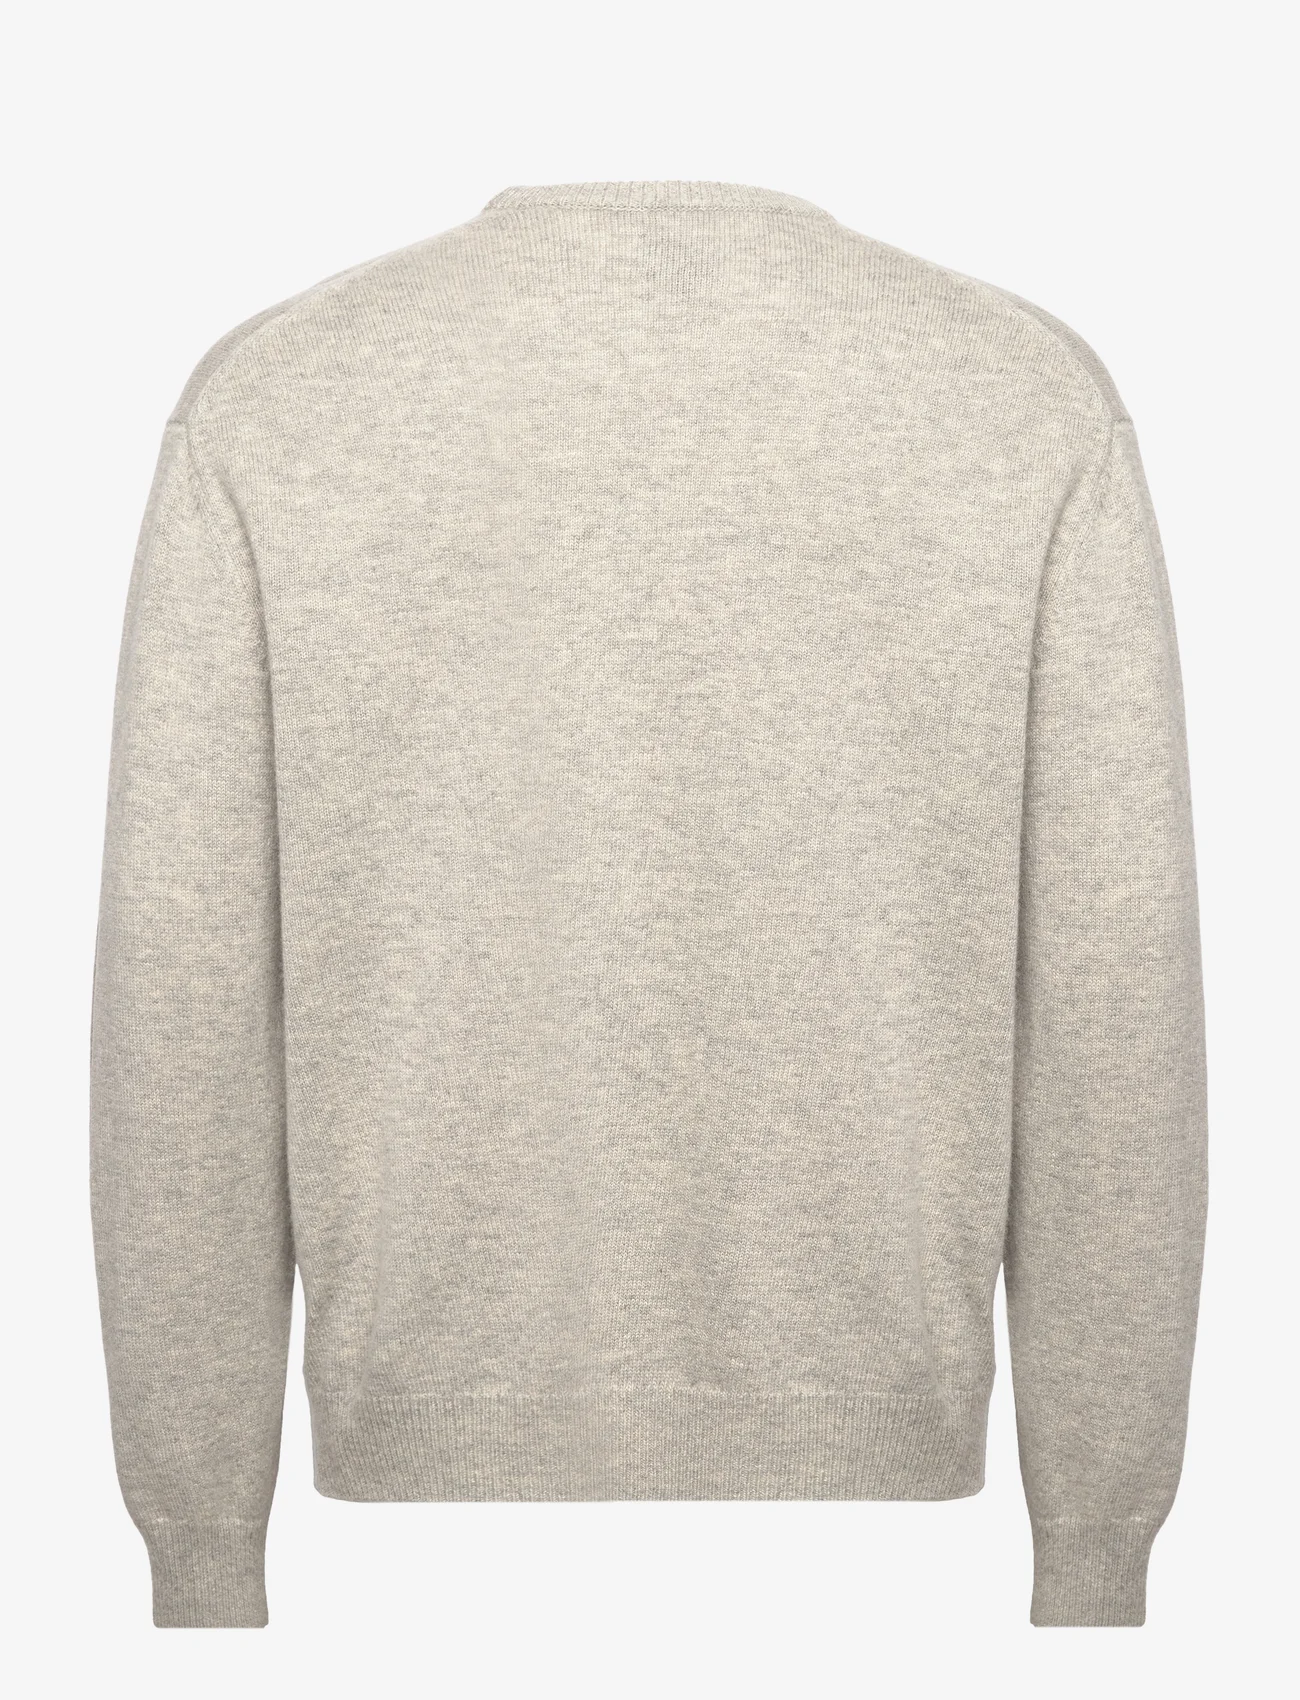 Tonsure - Philip knit crewneck - truien met ronde hals - light grey melange - 1